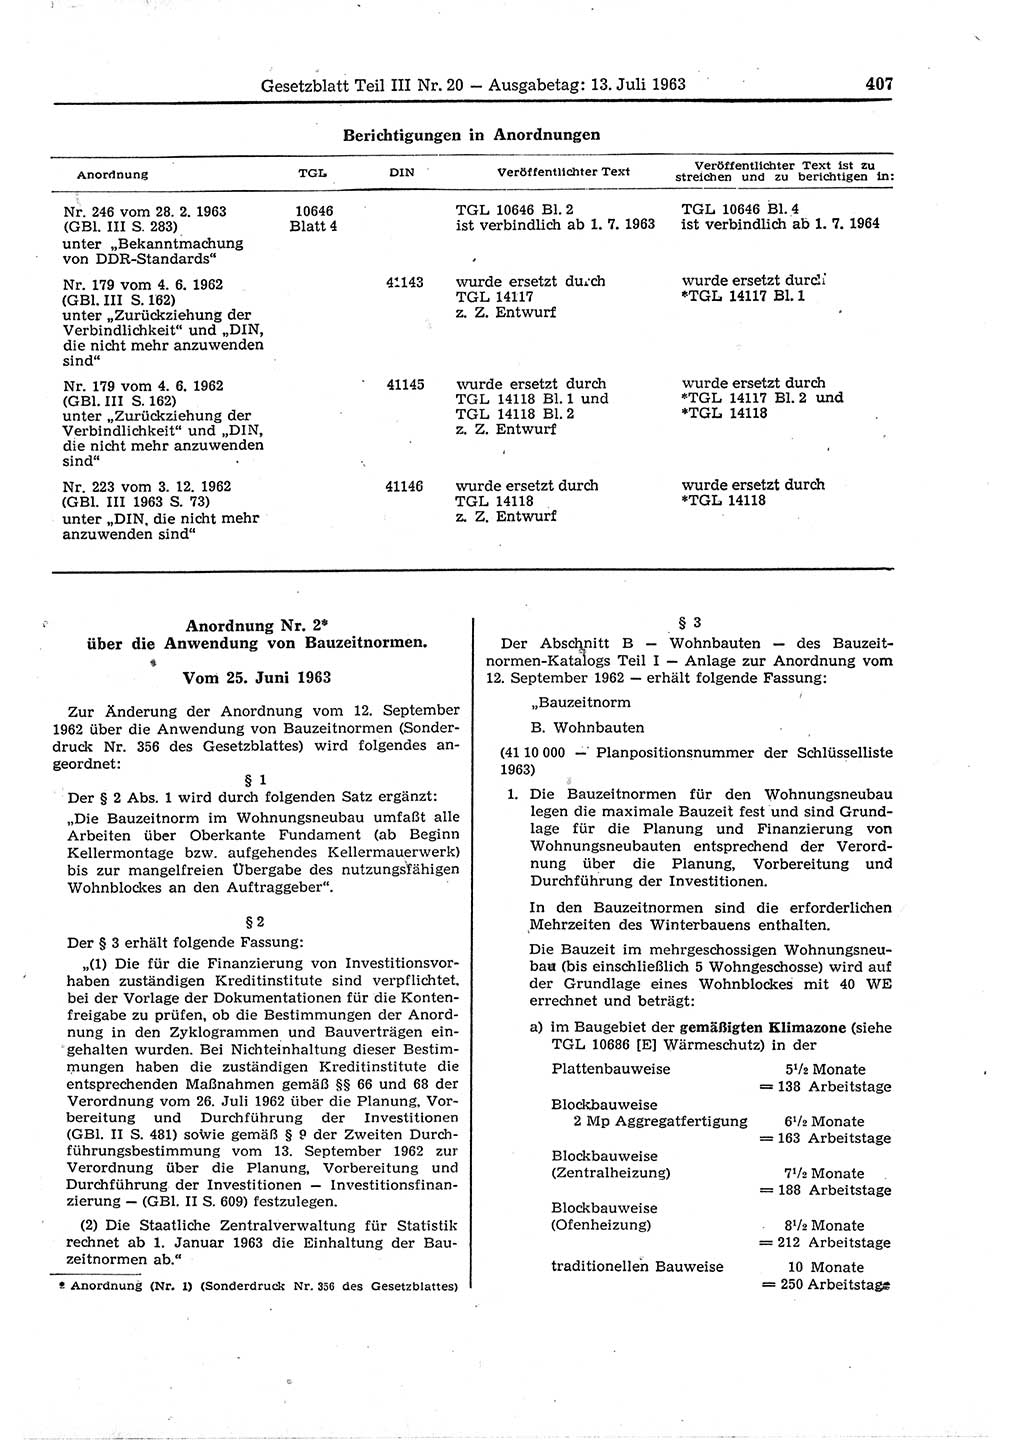 Gesetzblatt (GBl.) der Deutschen Demokratischen Republik (DDR) Teil ⅠⅠⅠ 1963, Seite 407 (GBl. DDR ⅠⅠⅠ 1963, S. 407)